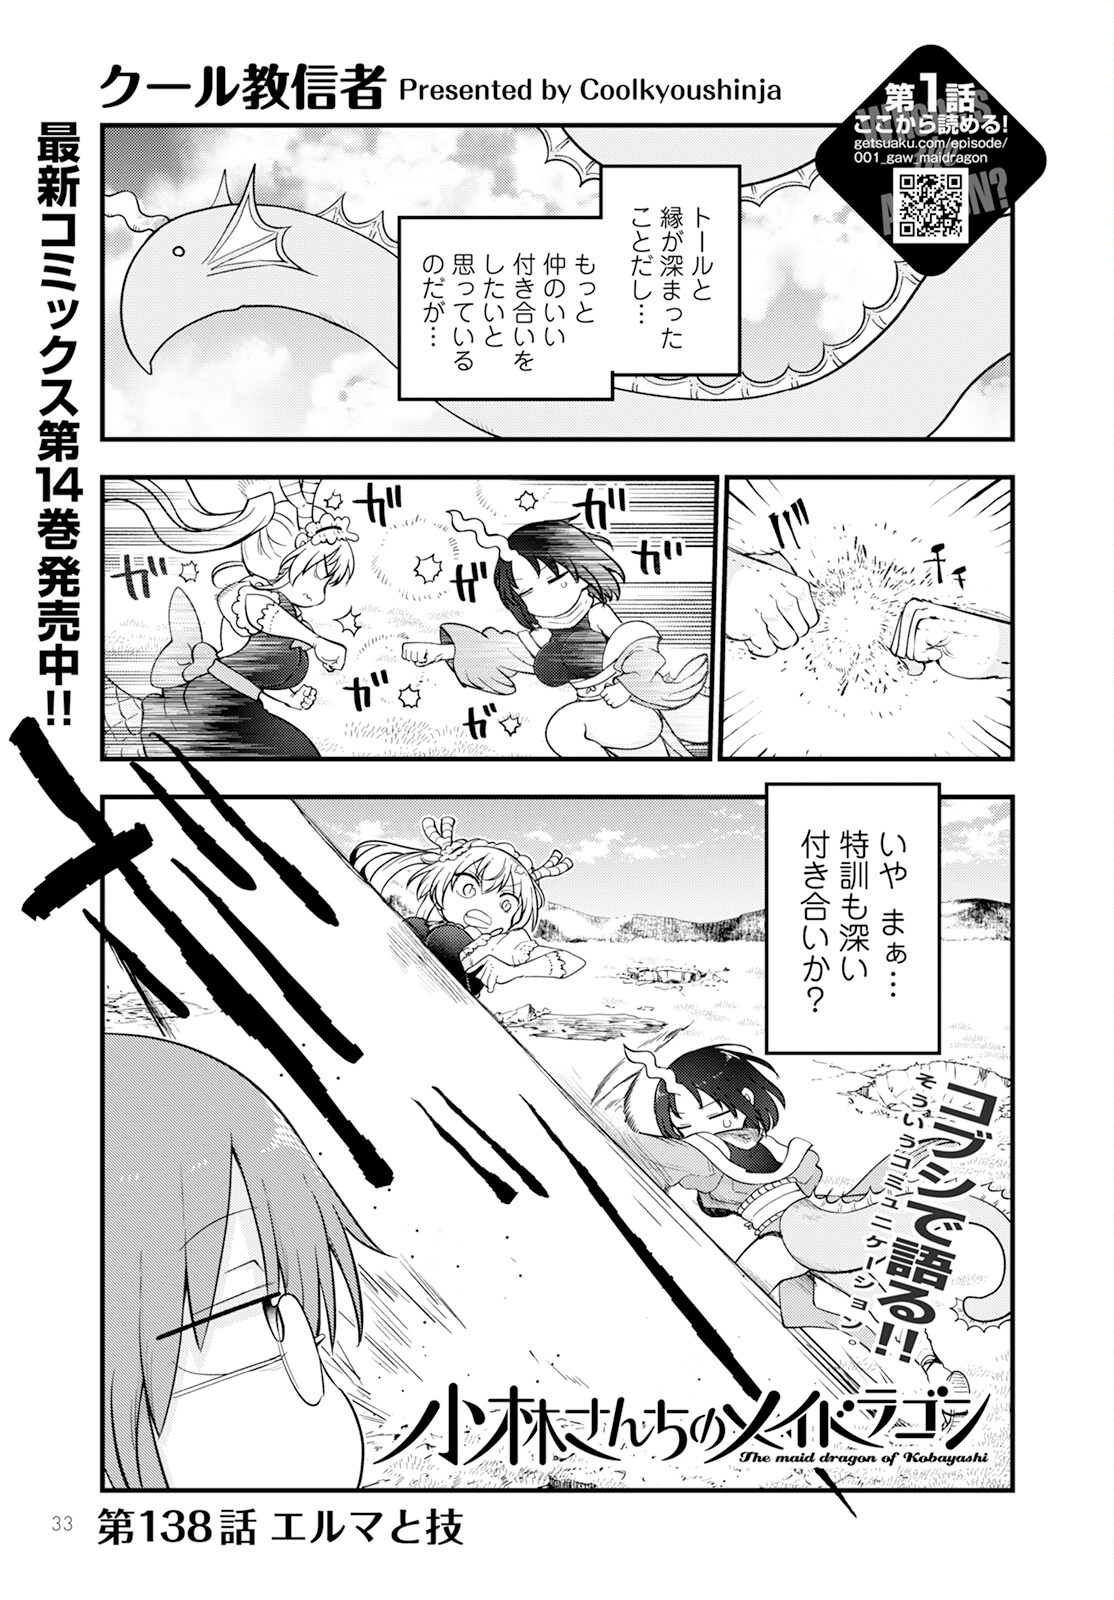 Kobayashi-san Chi no Maid Dragon - Chapter 138 - Page 1